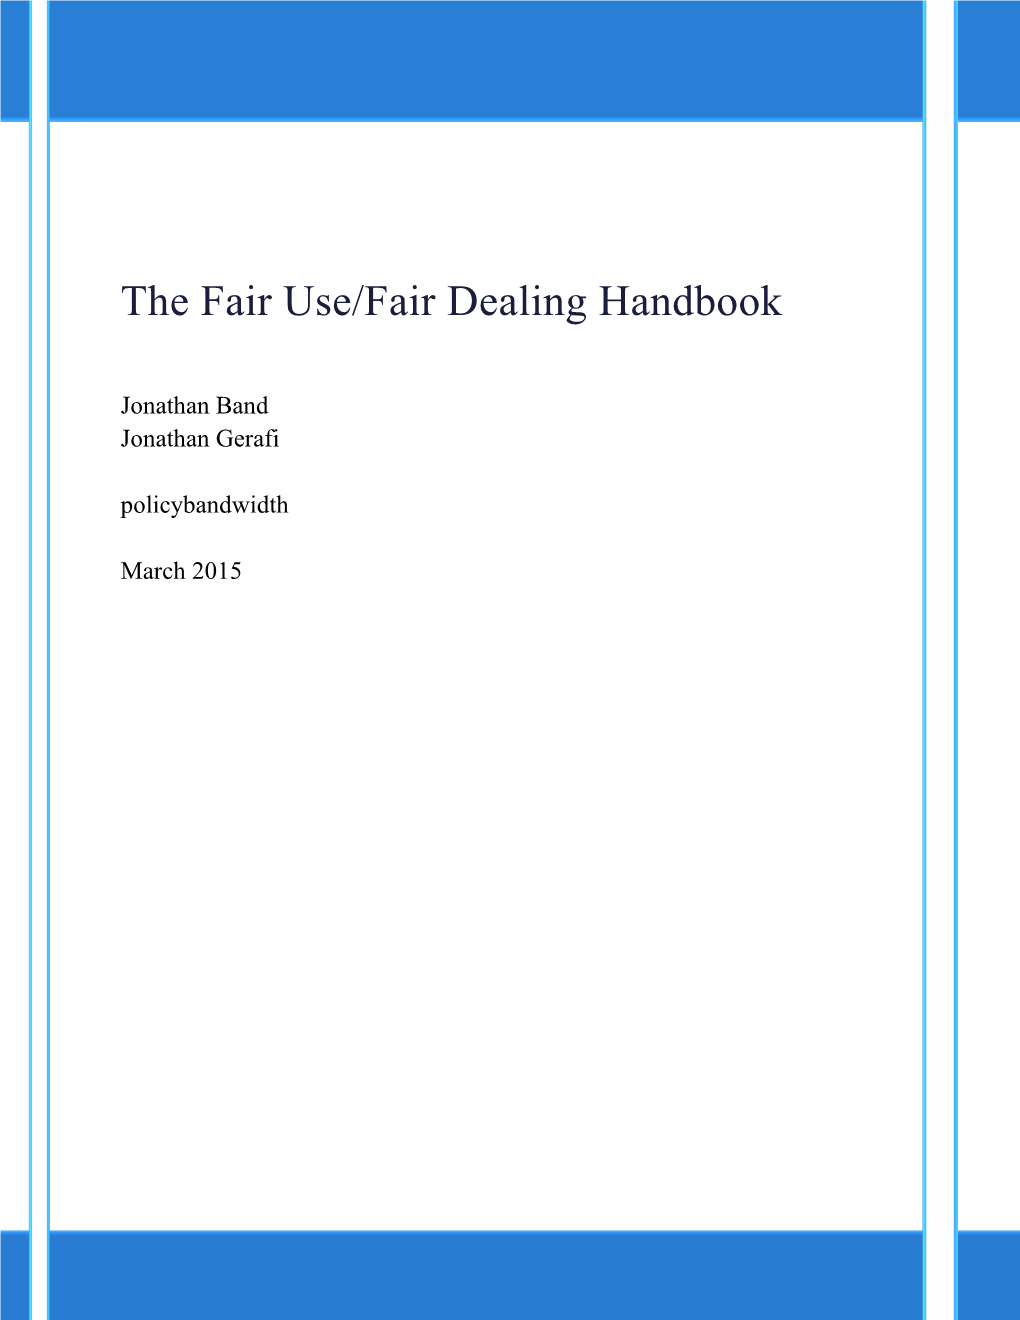 The Fair Use/Fair Dealing Handbook